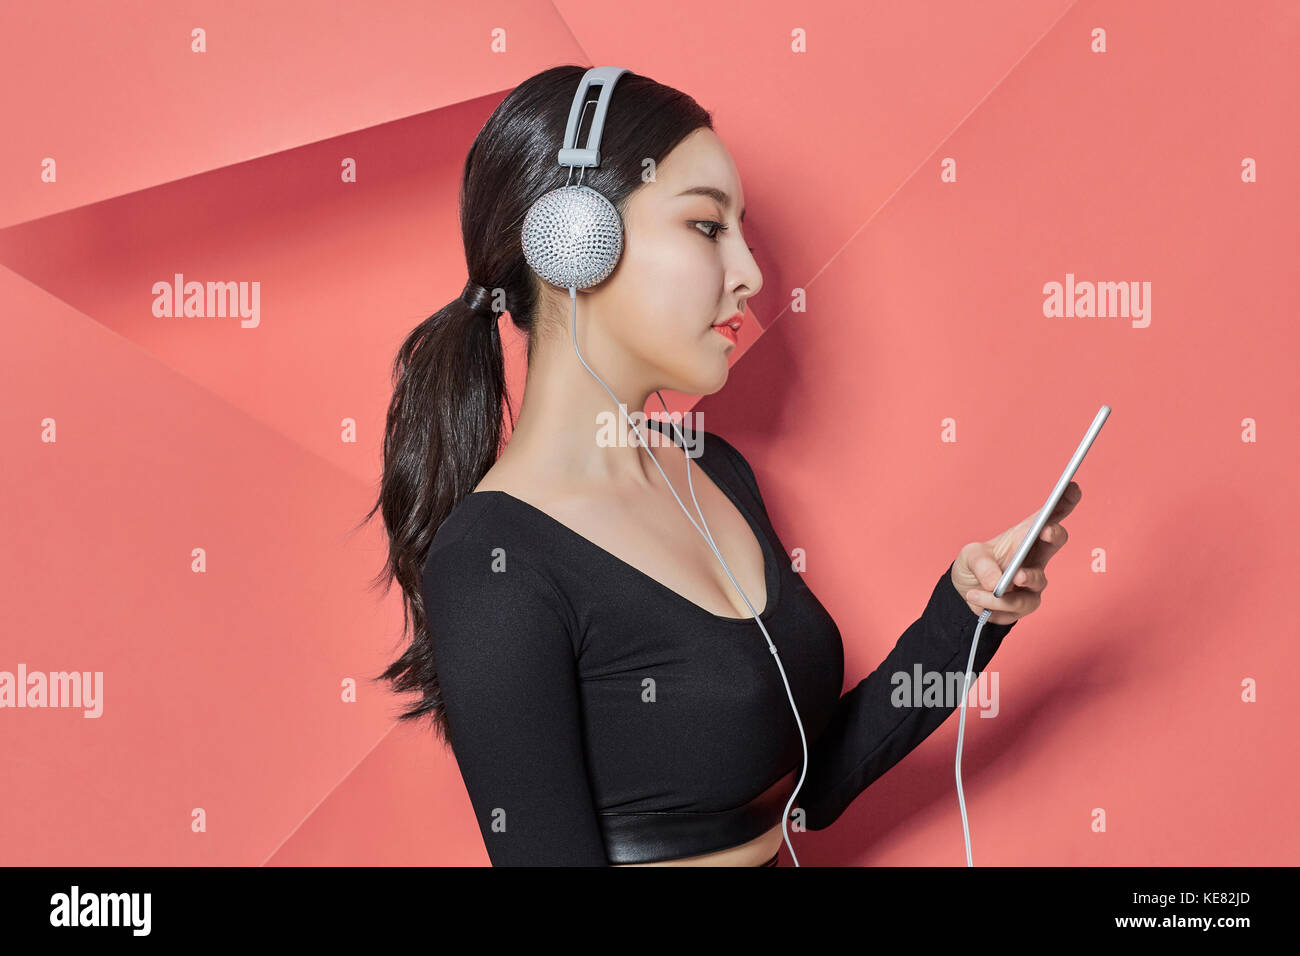 Vue de côté portrait of young woman listening to music Banque D'Images